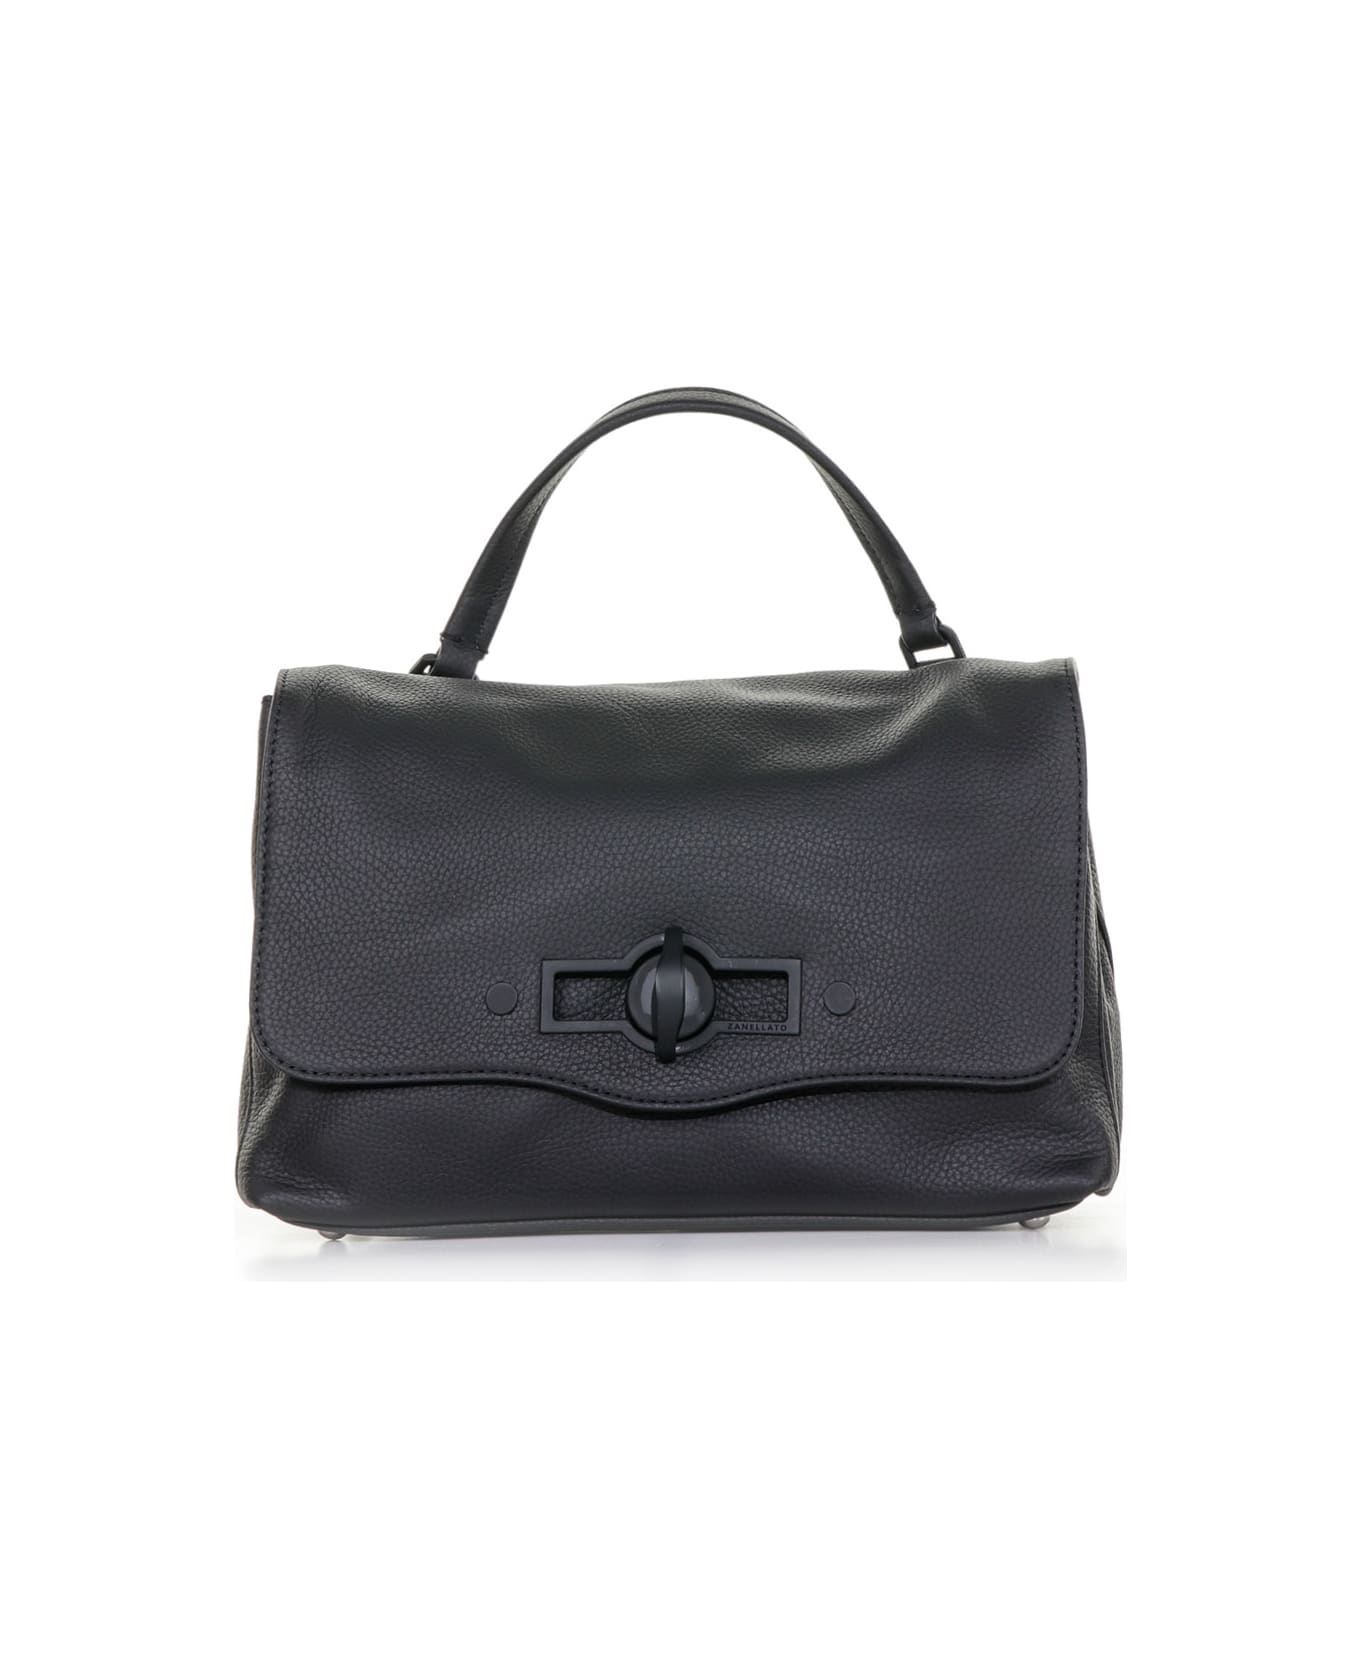 Zanellato Postina Pura 2.1 Bag In Leather - ETNA NERO